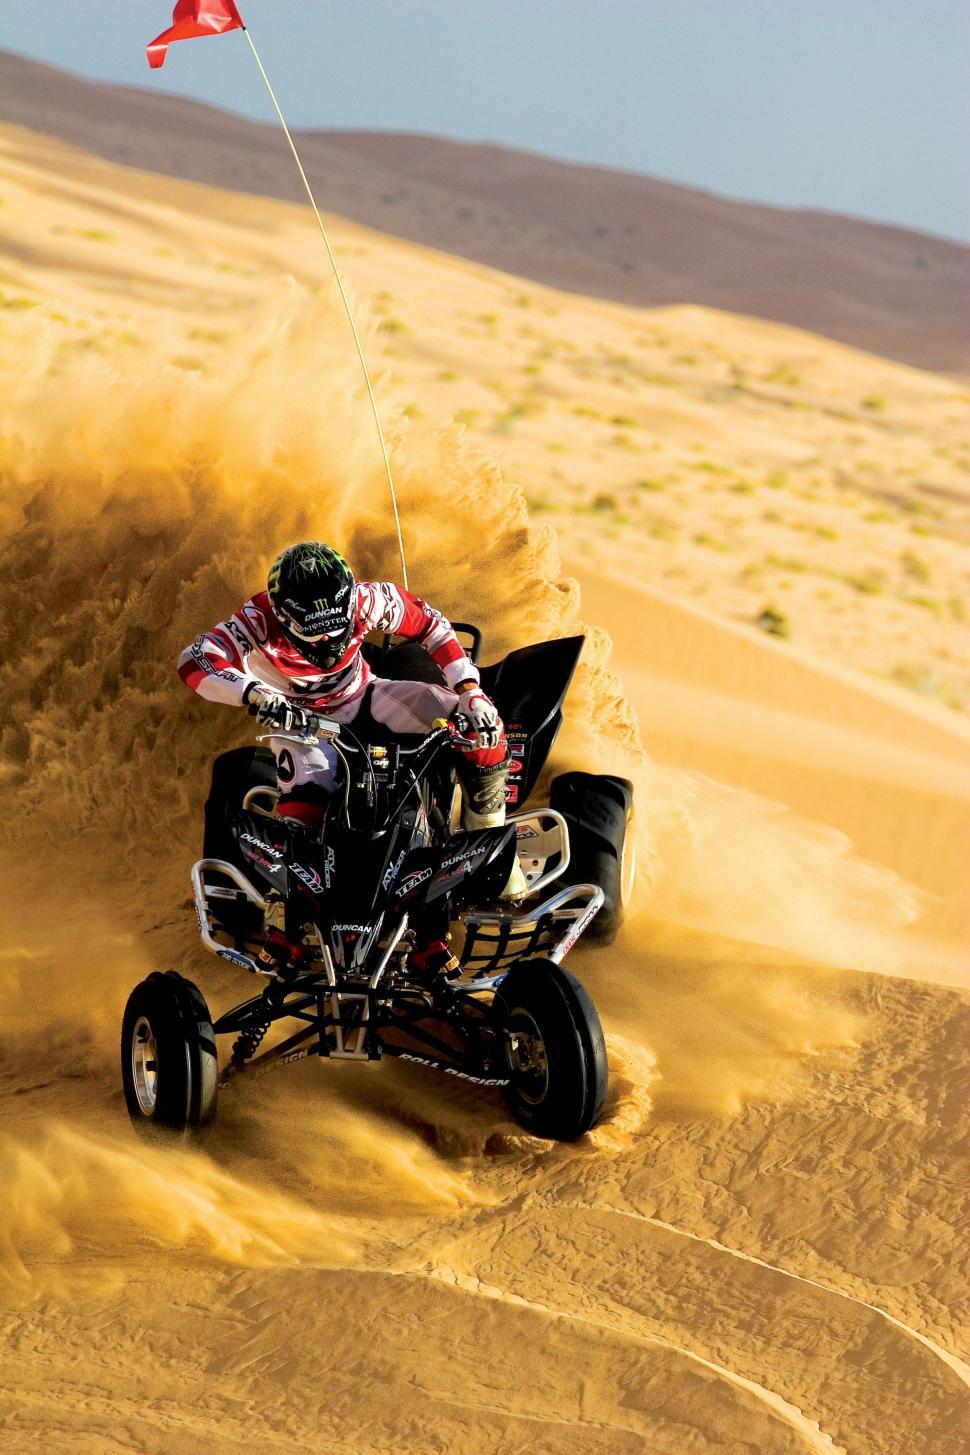 Free Image of Man Riding Four-Wheeler in Desert 